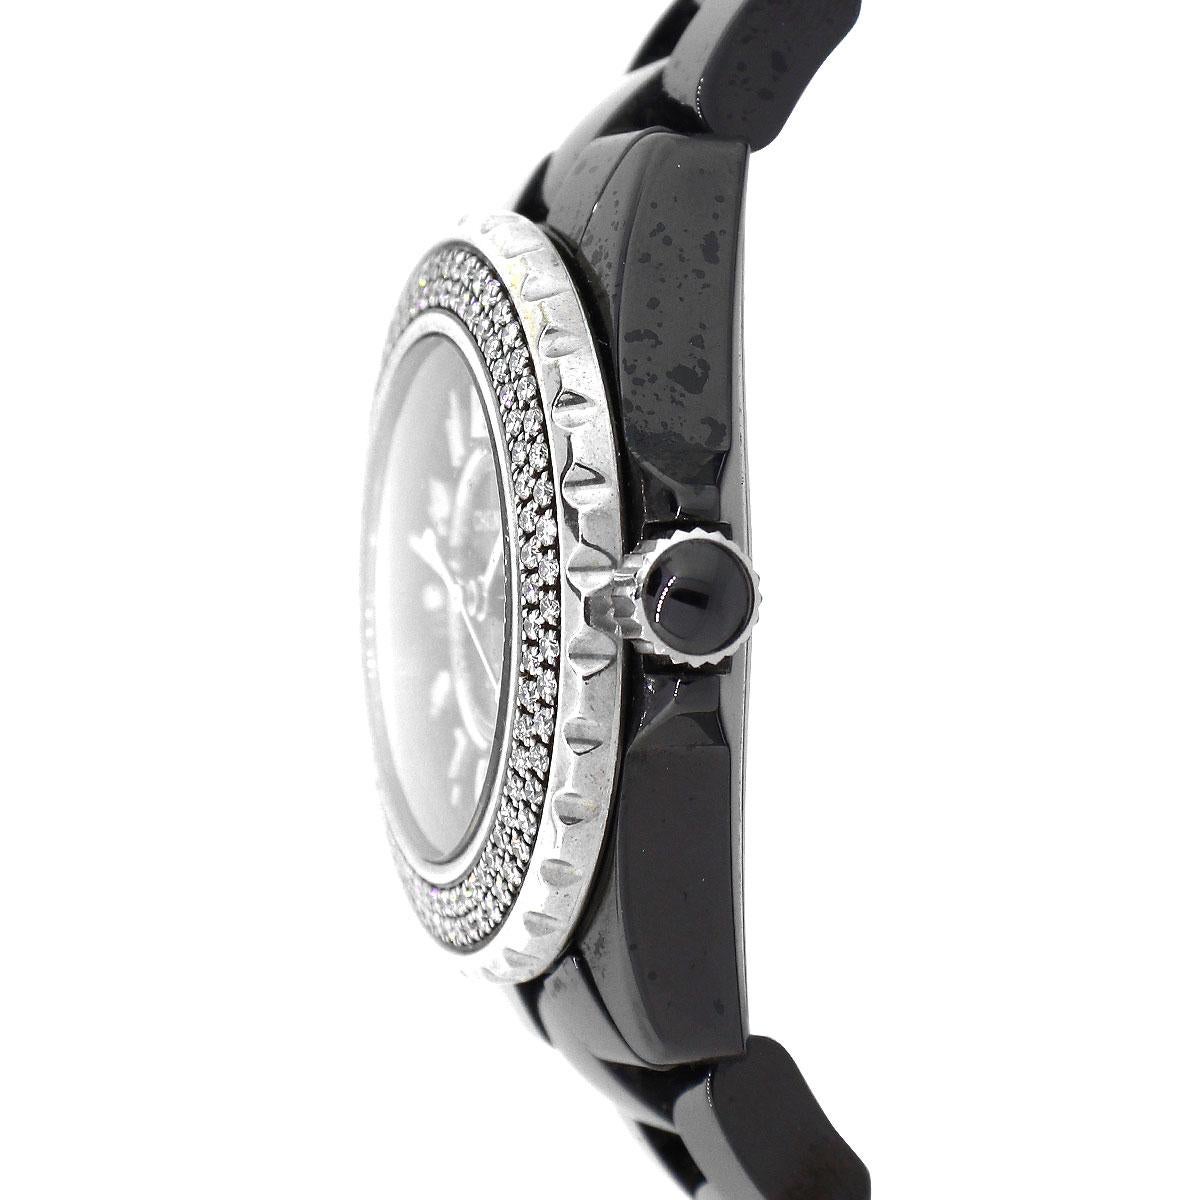 Taille ronde Chanel J12 Montre Femme Cadran Noir Lunette Diamantée